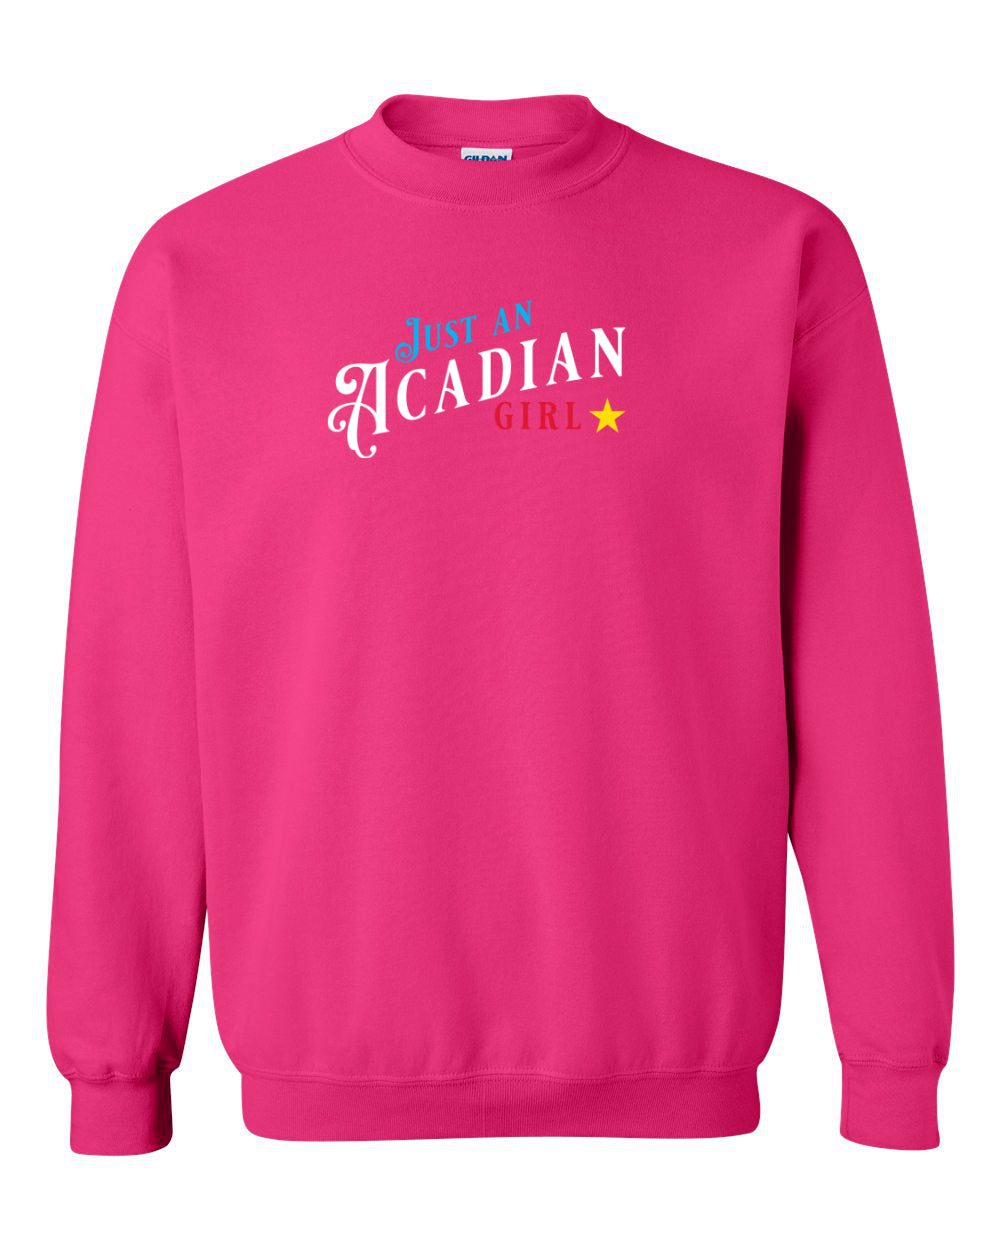 Just an Acadian Girl Sweatshirt